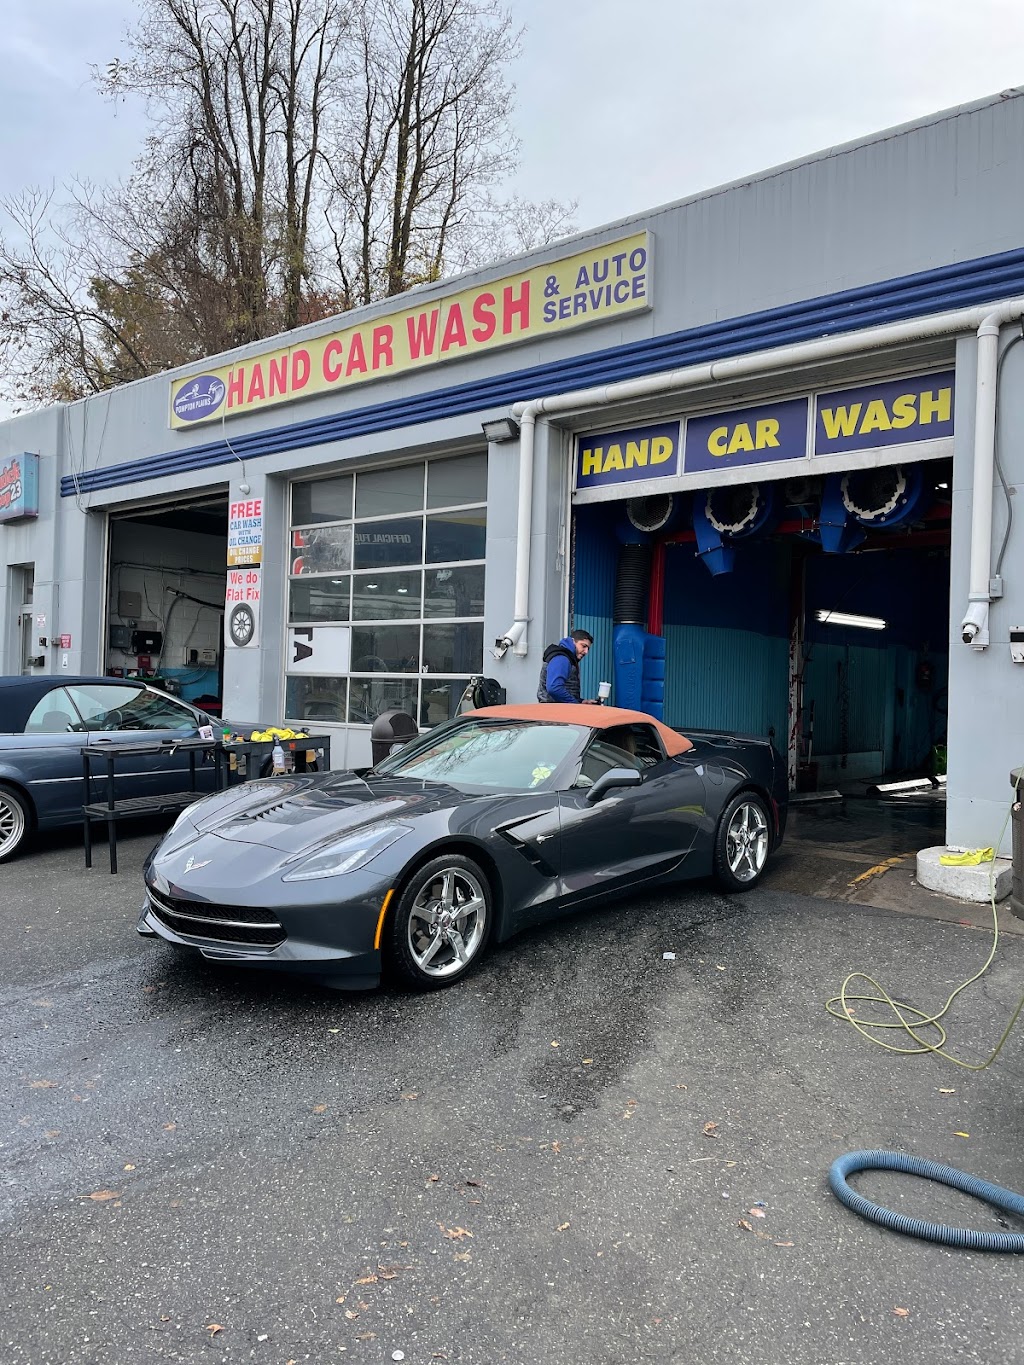 Pompton Plains Hand Car Wash | 729 NJ-23, Pompton Plains, NJ 07444 | Phone: (929) 206-4700